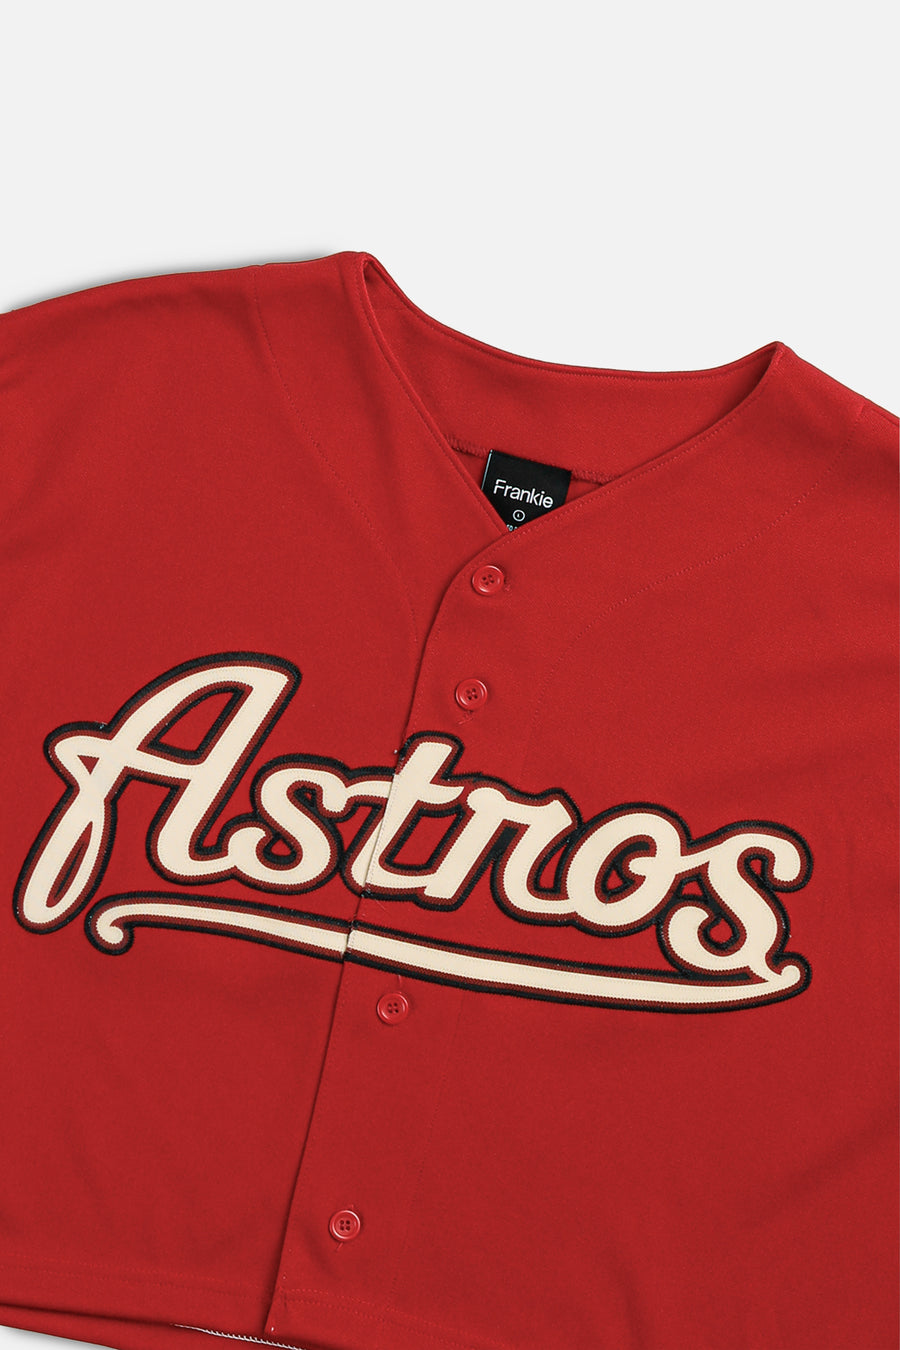 Rework Crop Houston Astros MLB Jersey - XL